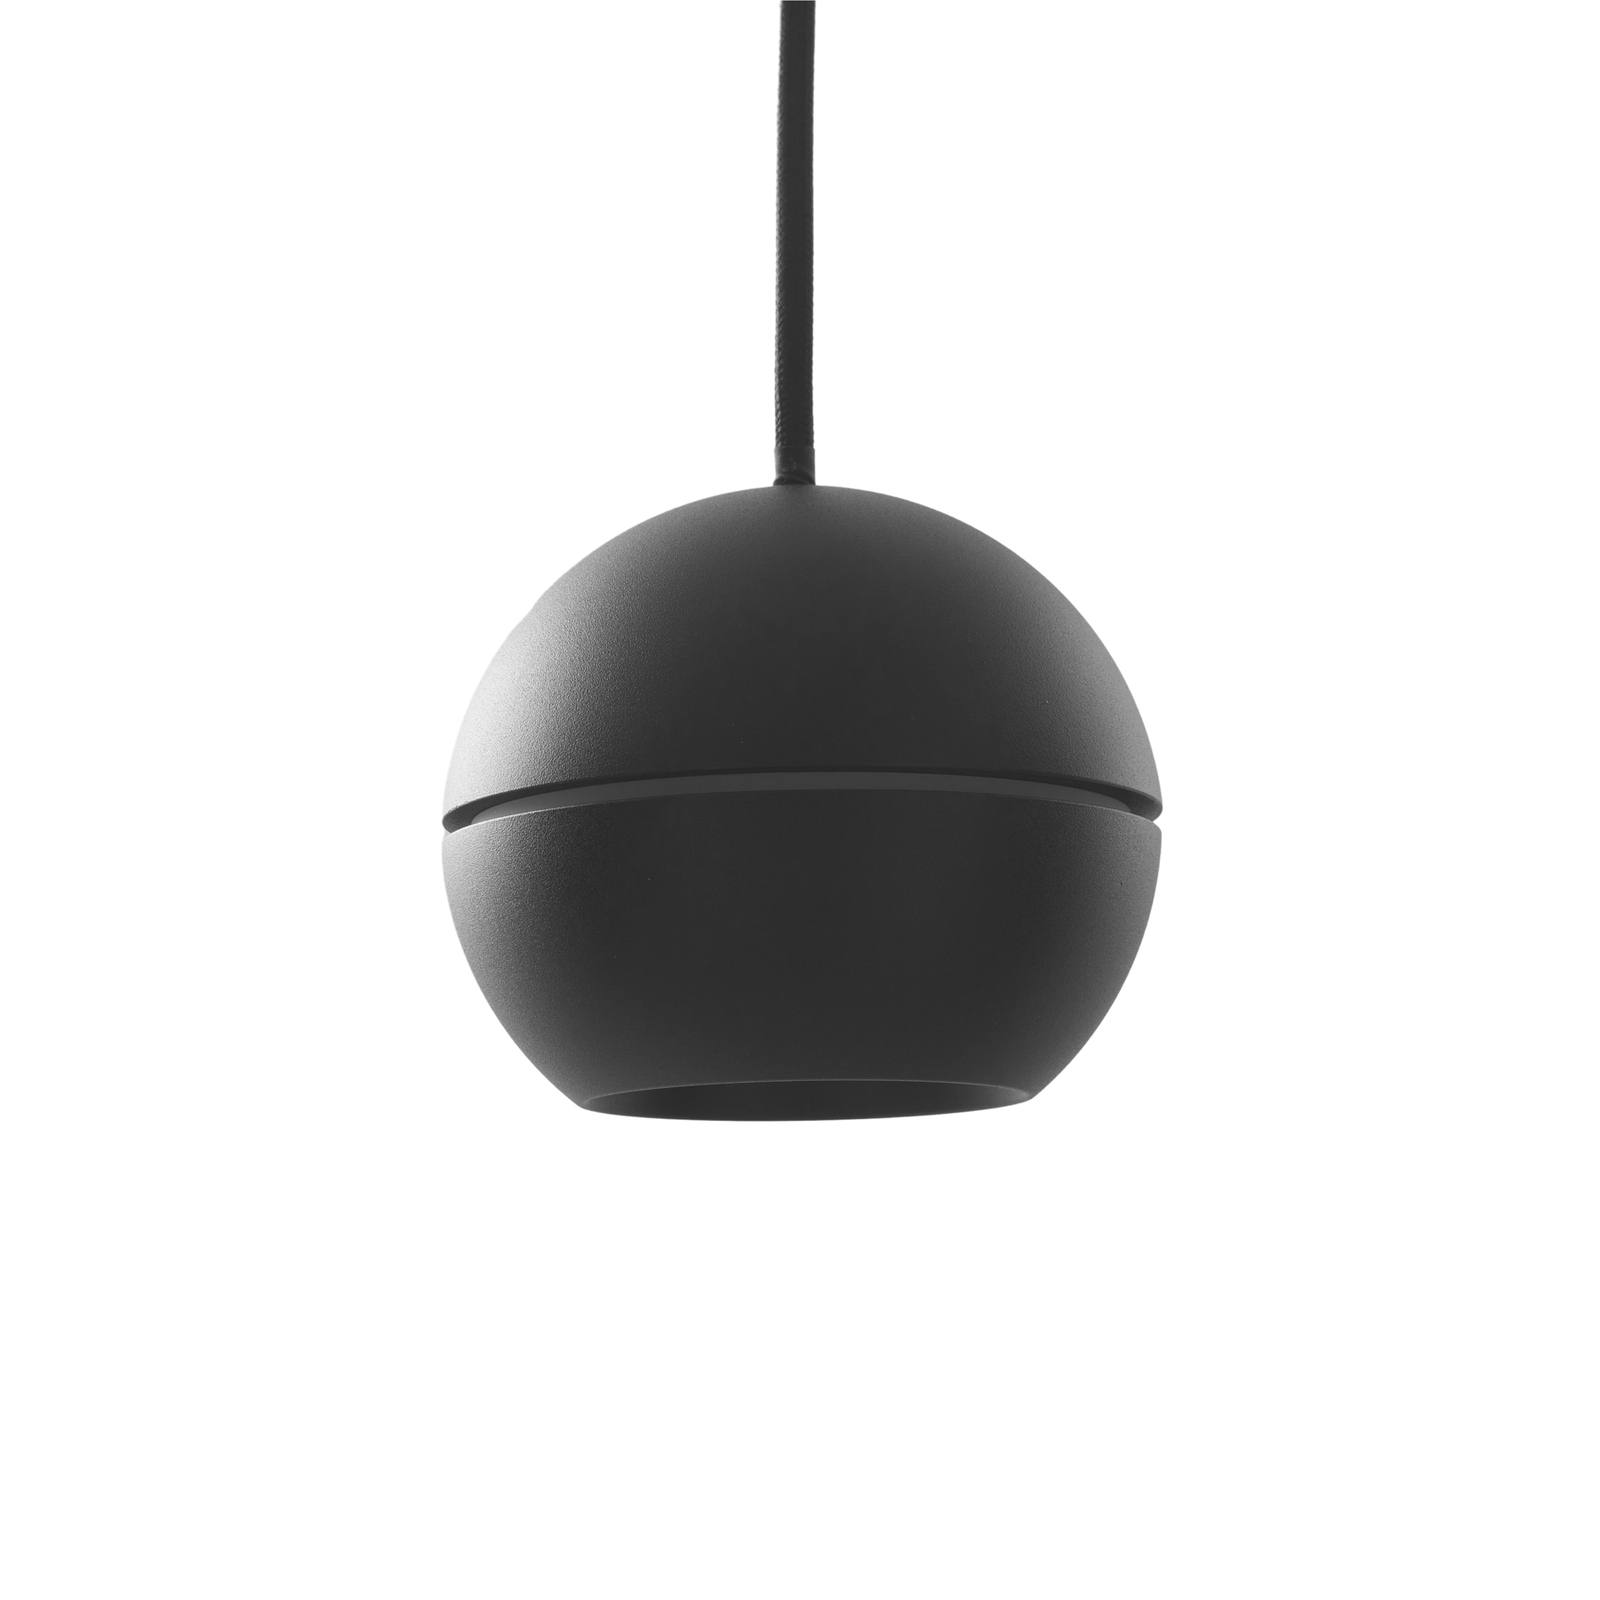 Lucande LED-es függőlámpa Plarion, fekete, alumínium, Ø 9 cm